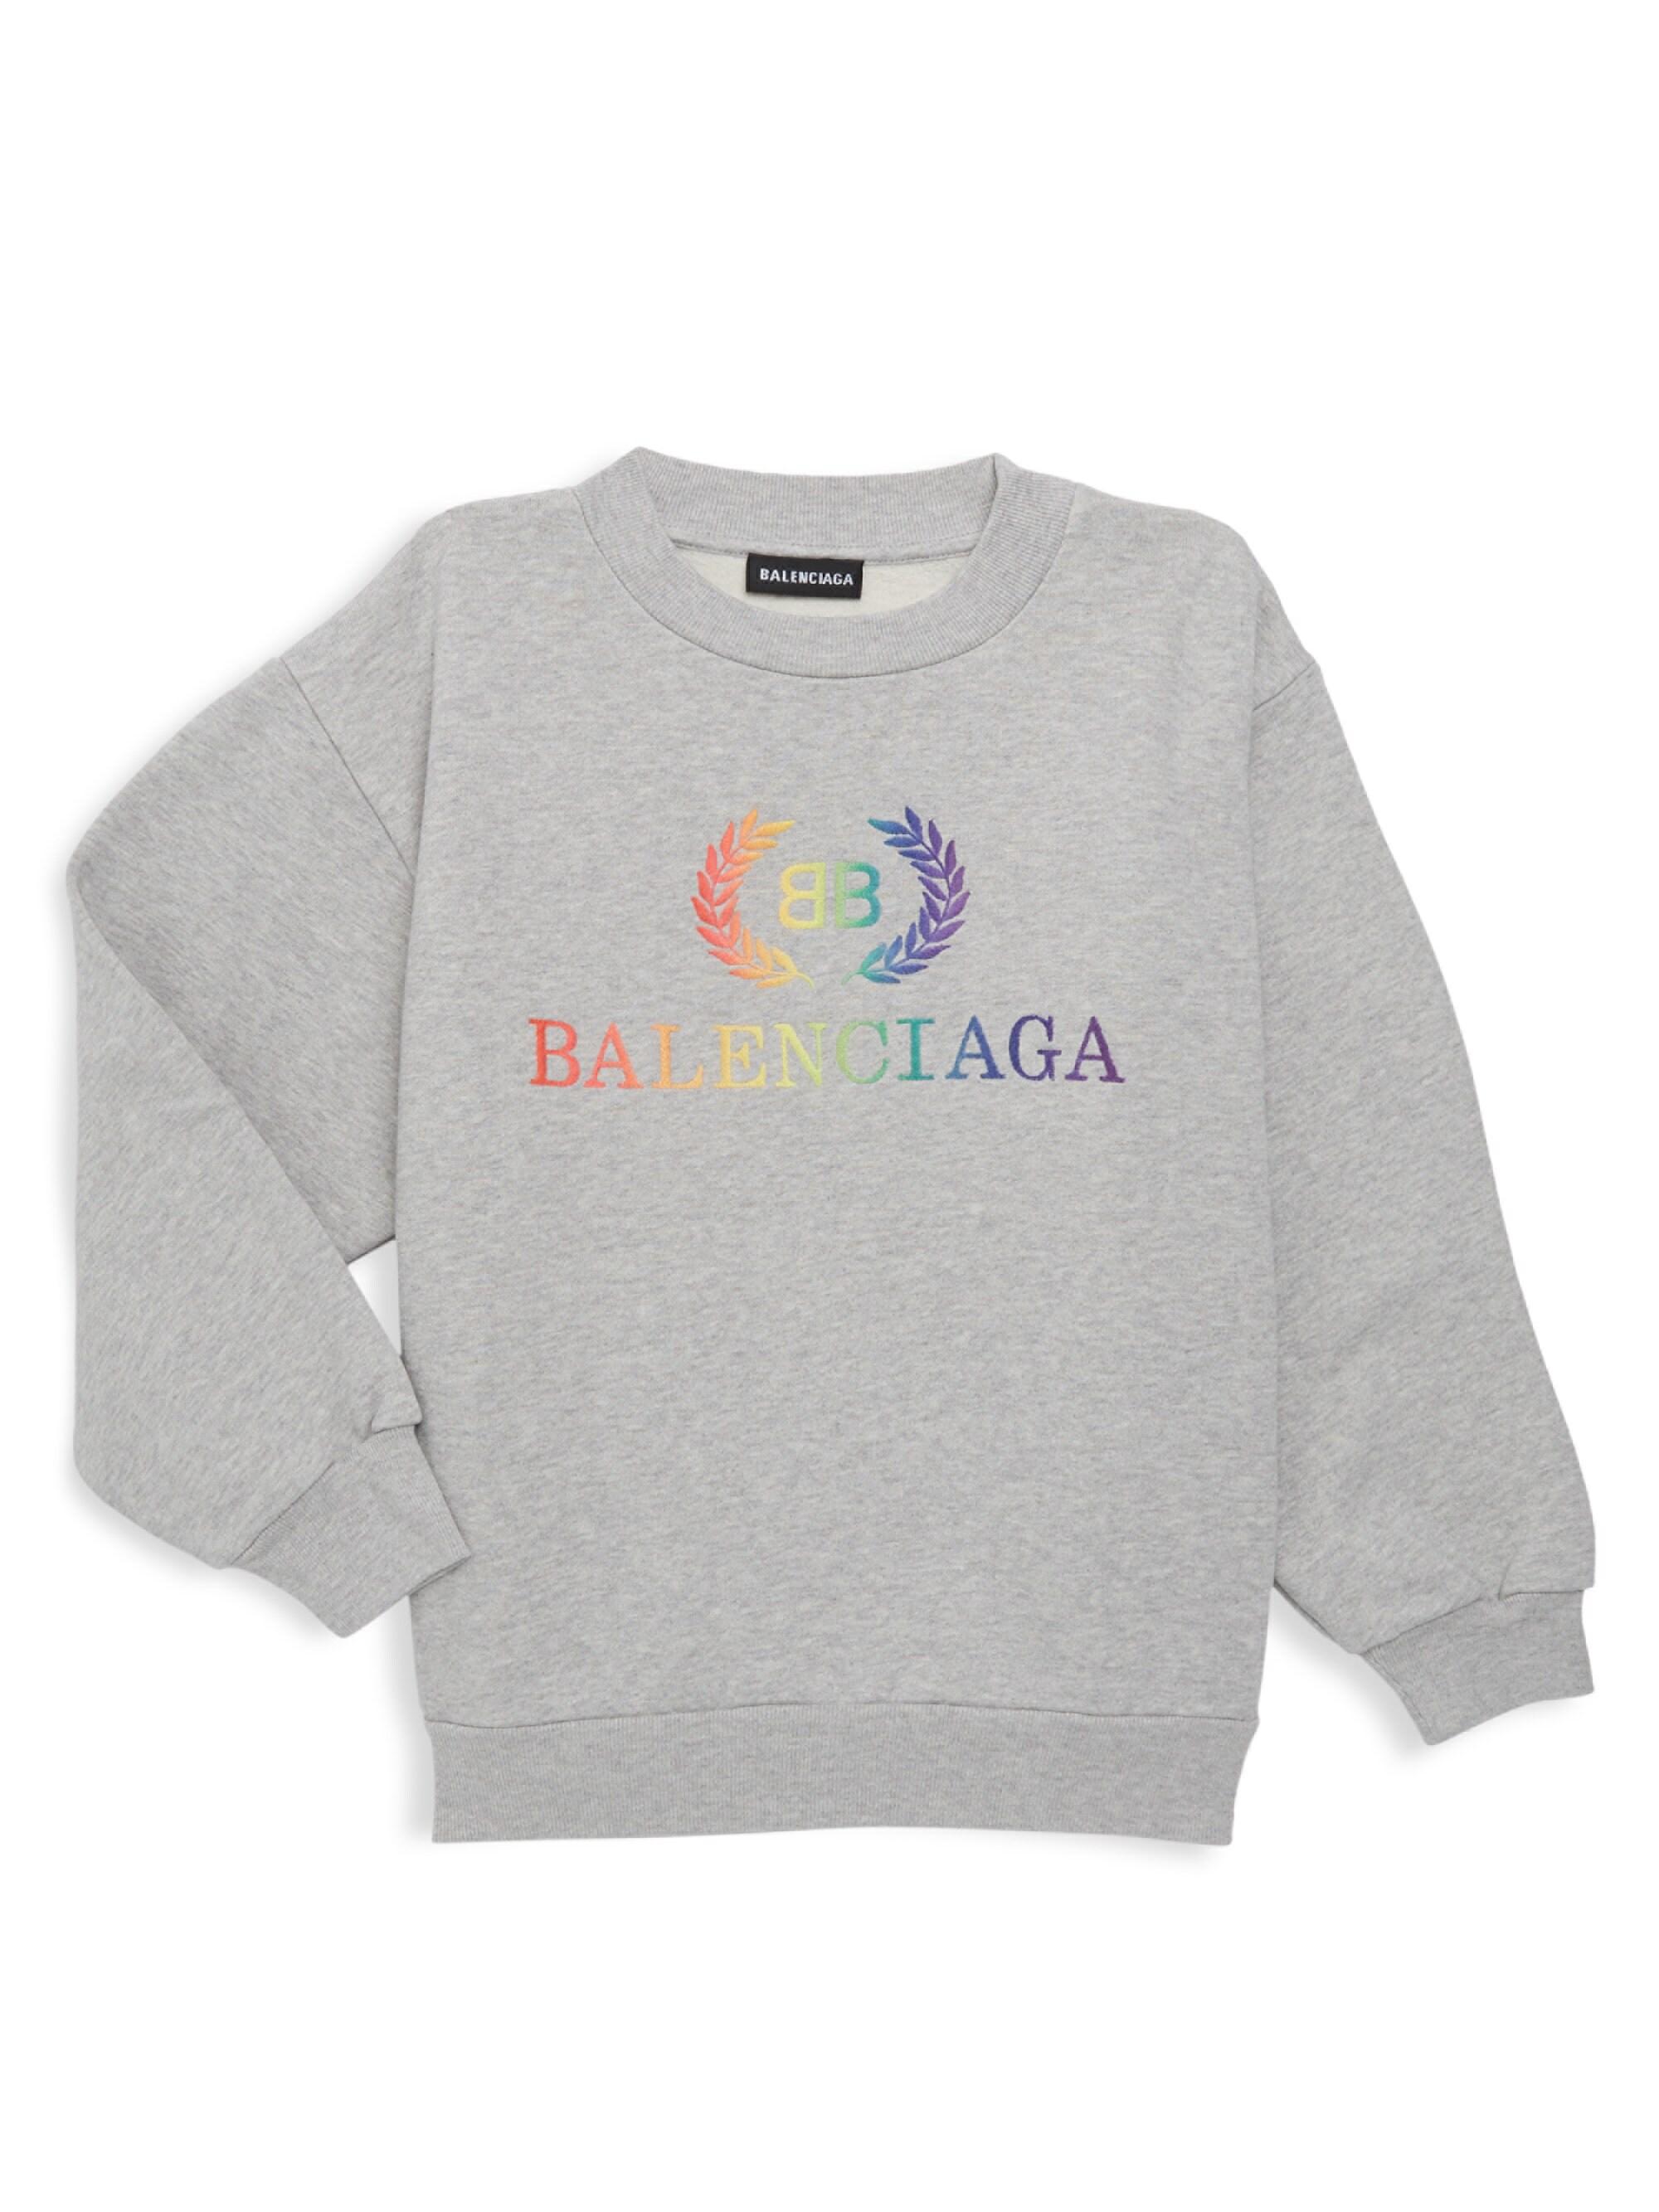 Buy balenciaga hoodie rainbow> OFF-69%